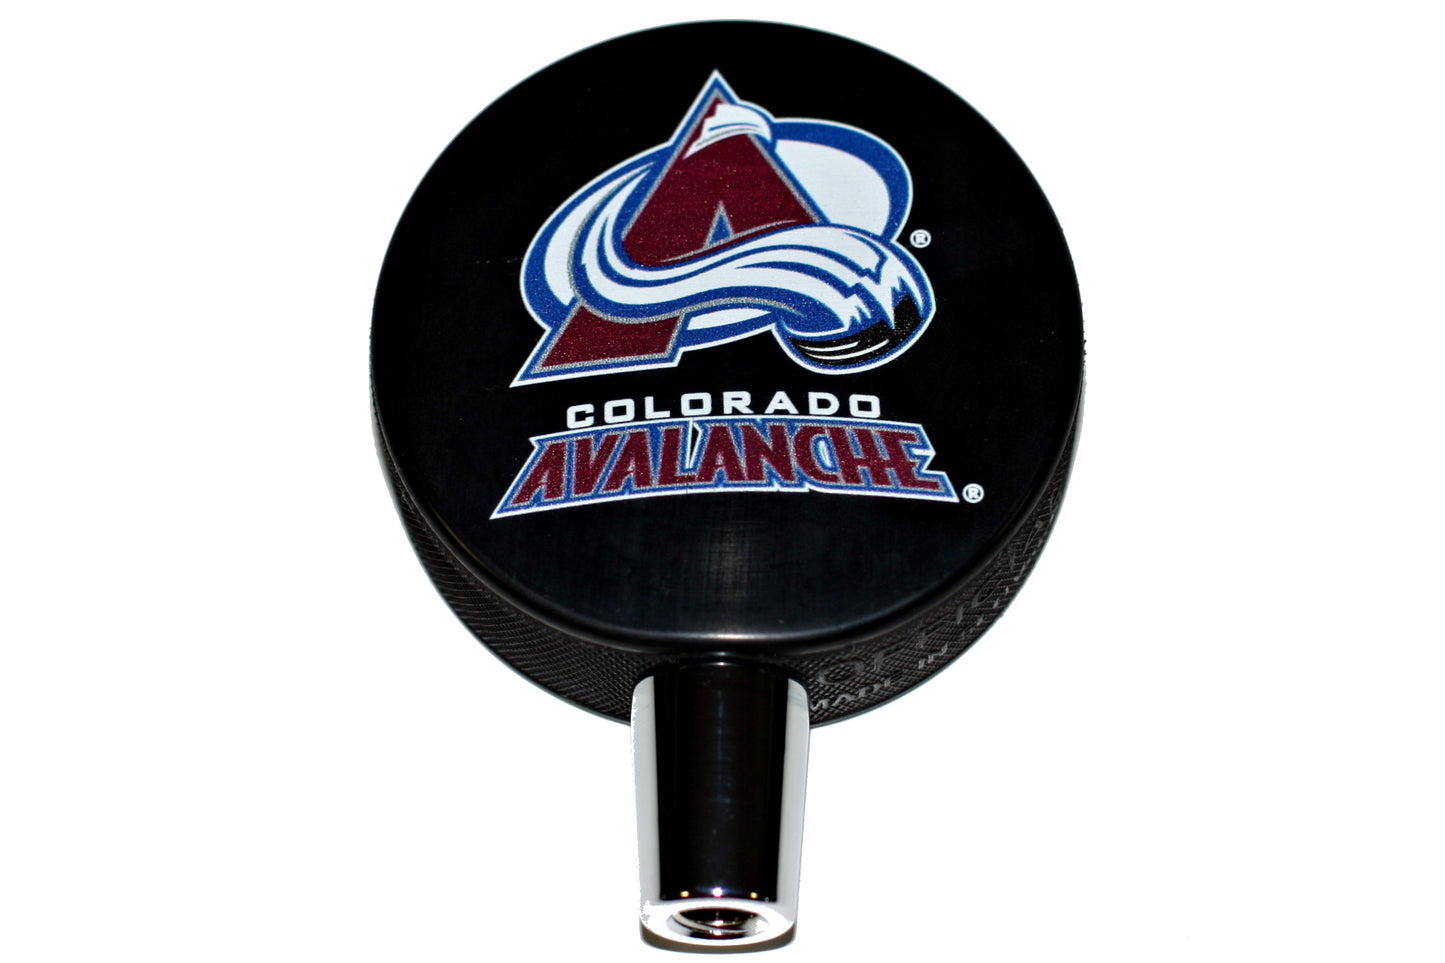 Colorado Avalanche Hockey Puck And Colorado Rockies Baseball Beer Tap Handle Set